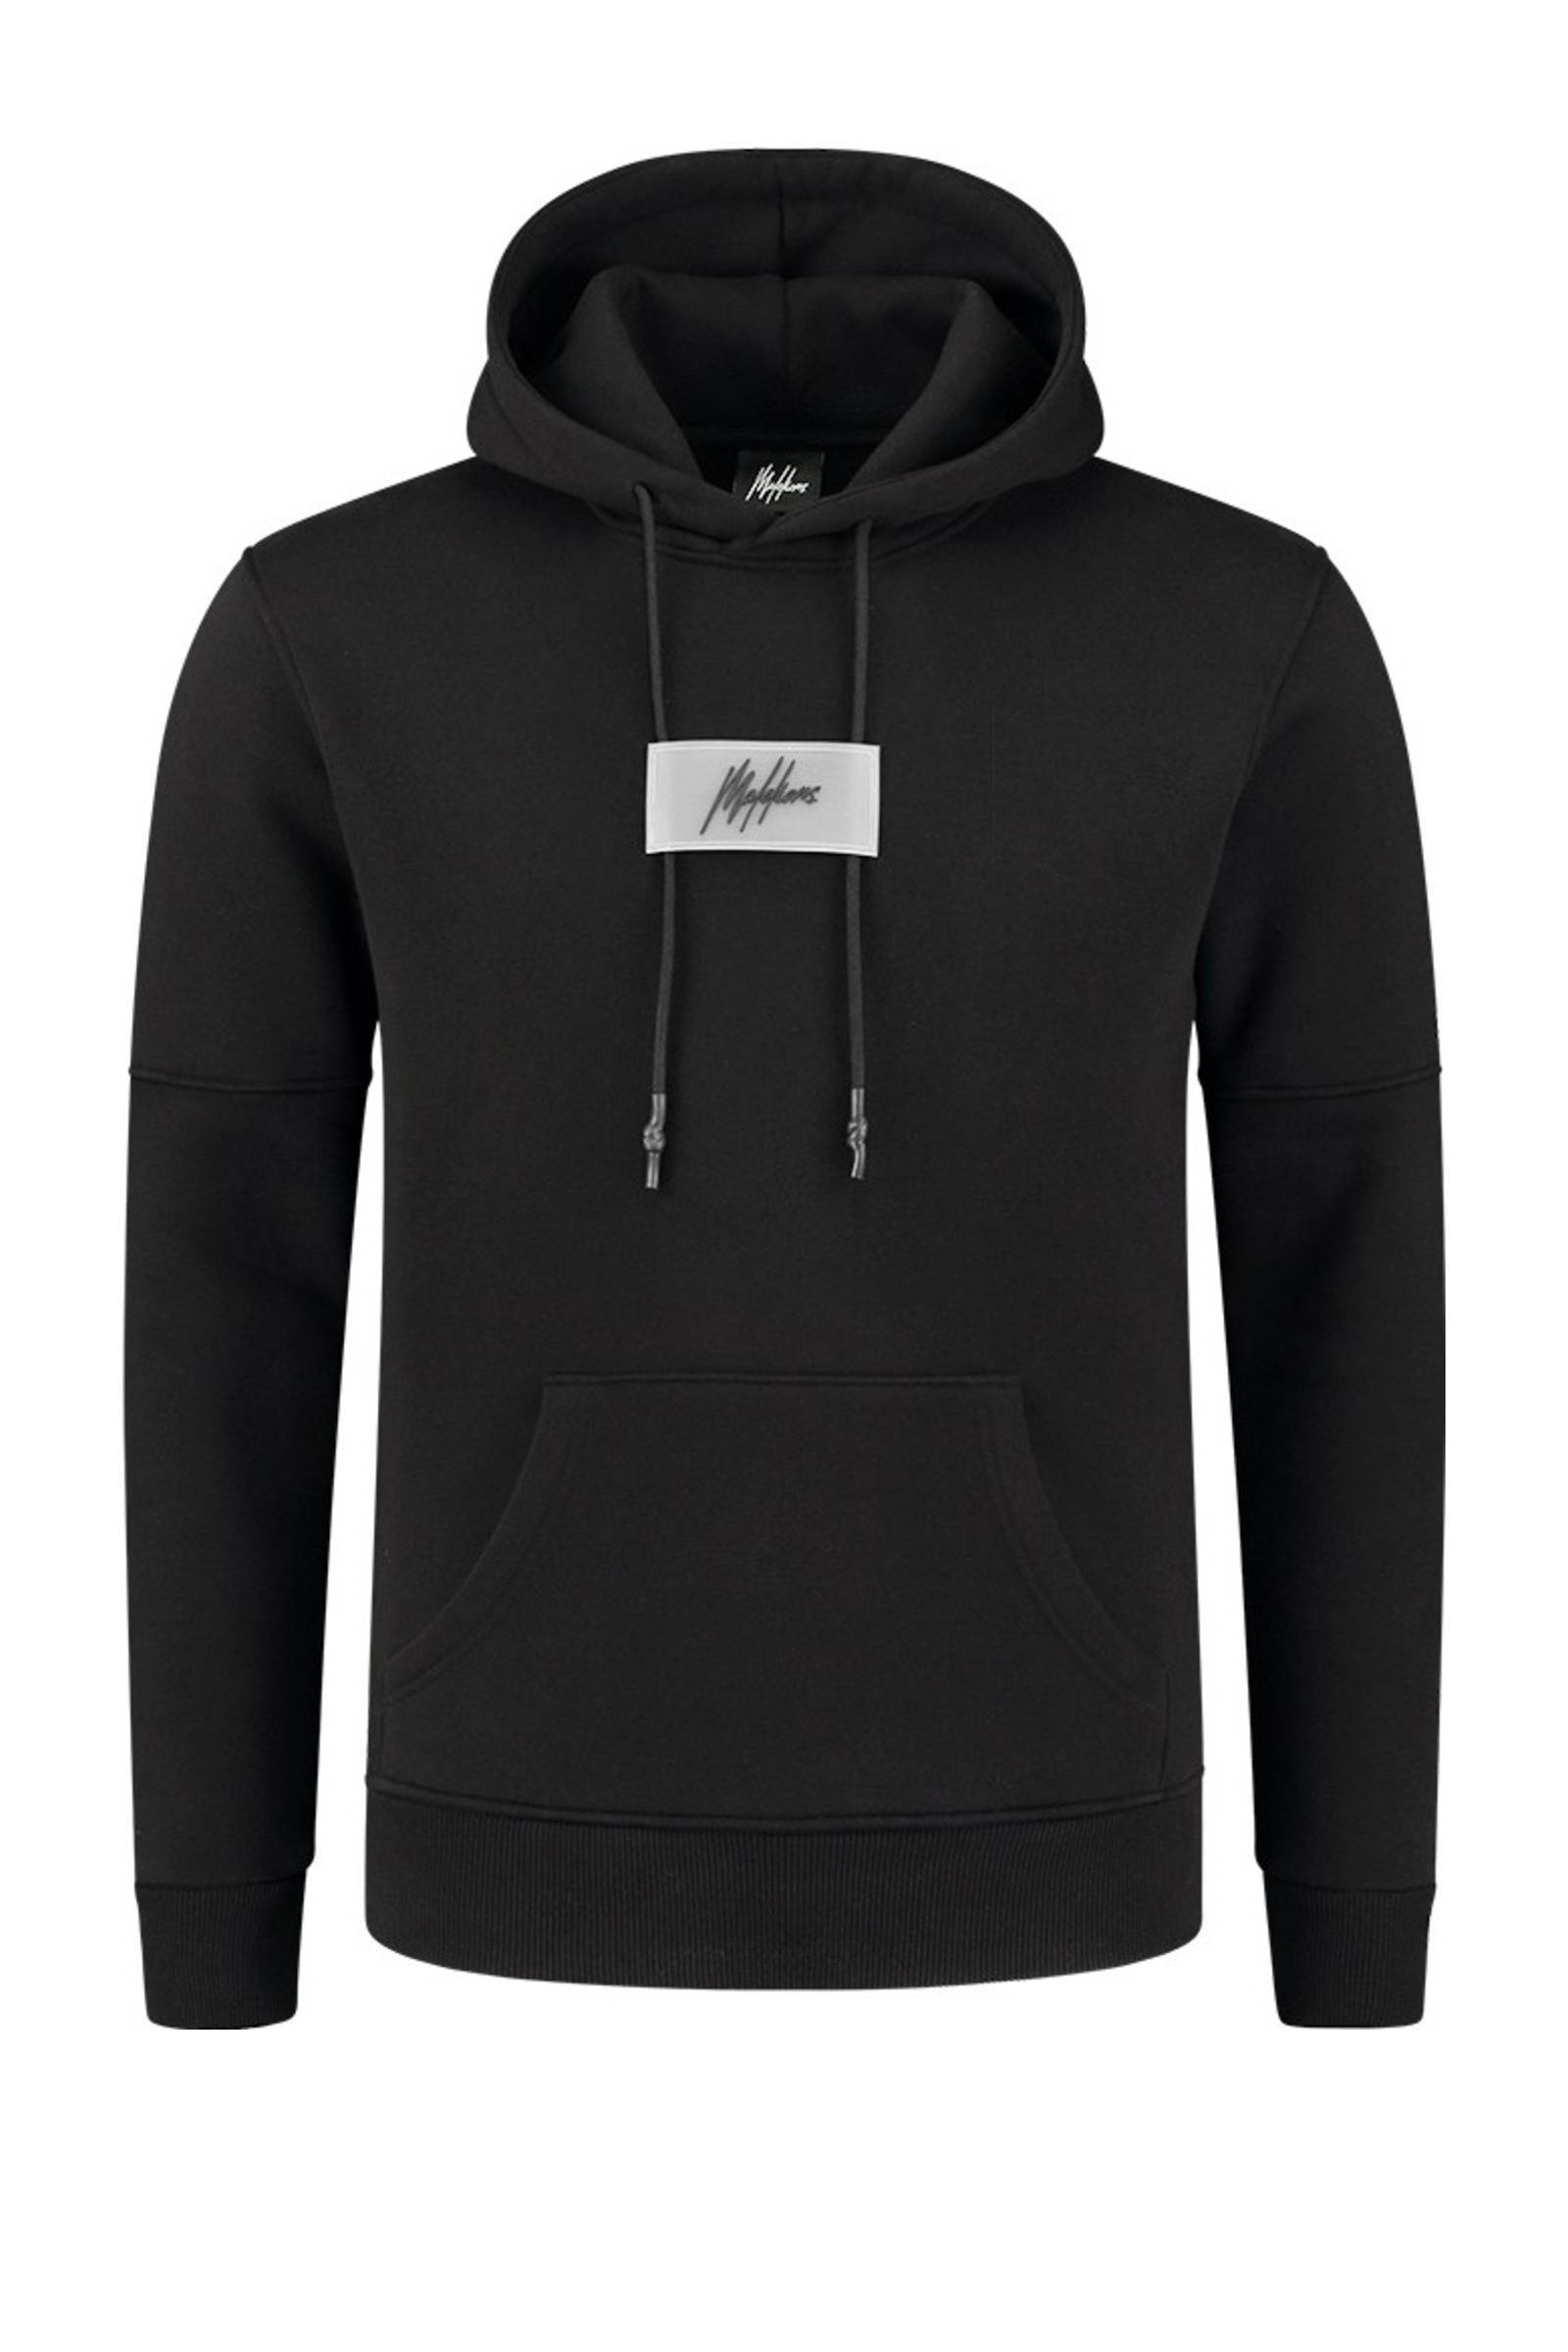 Malelions hoodie met logo zwart online kopen